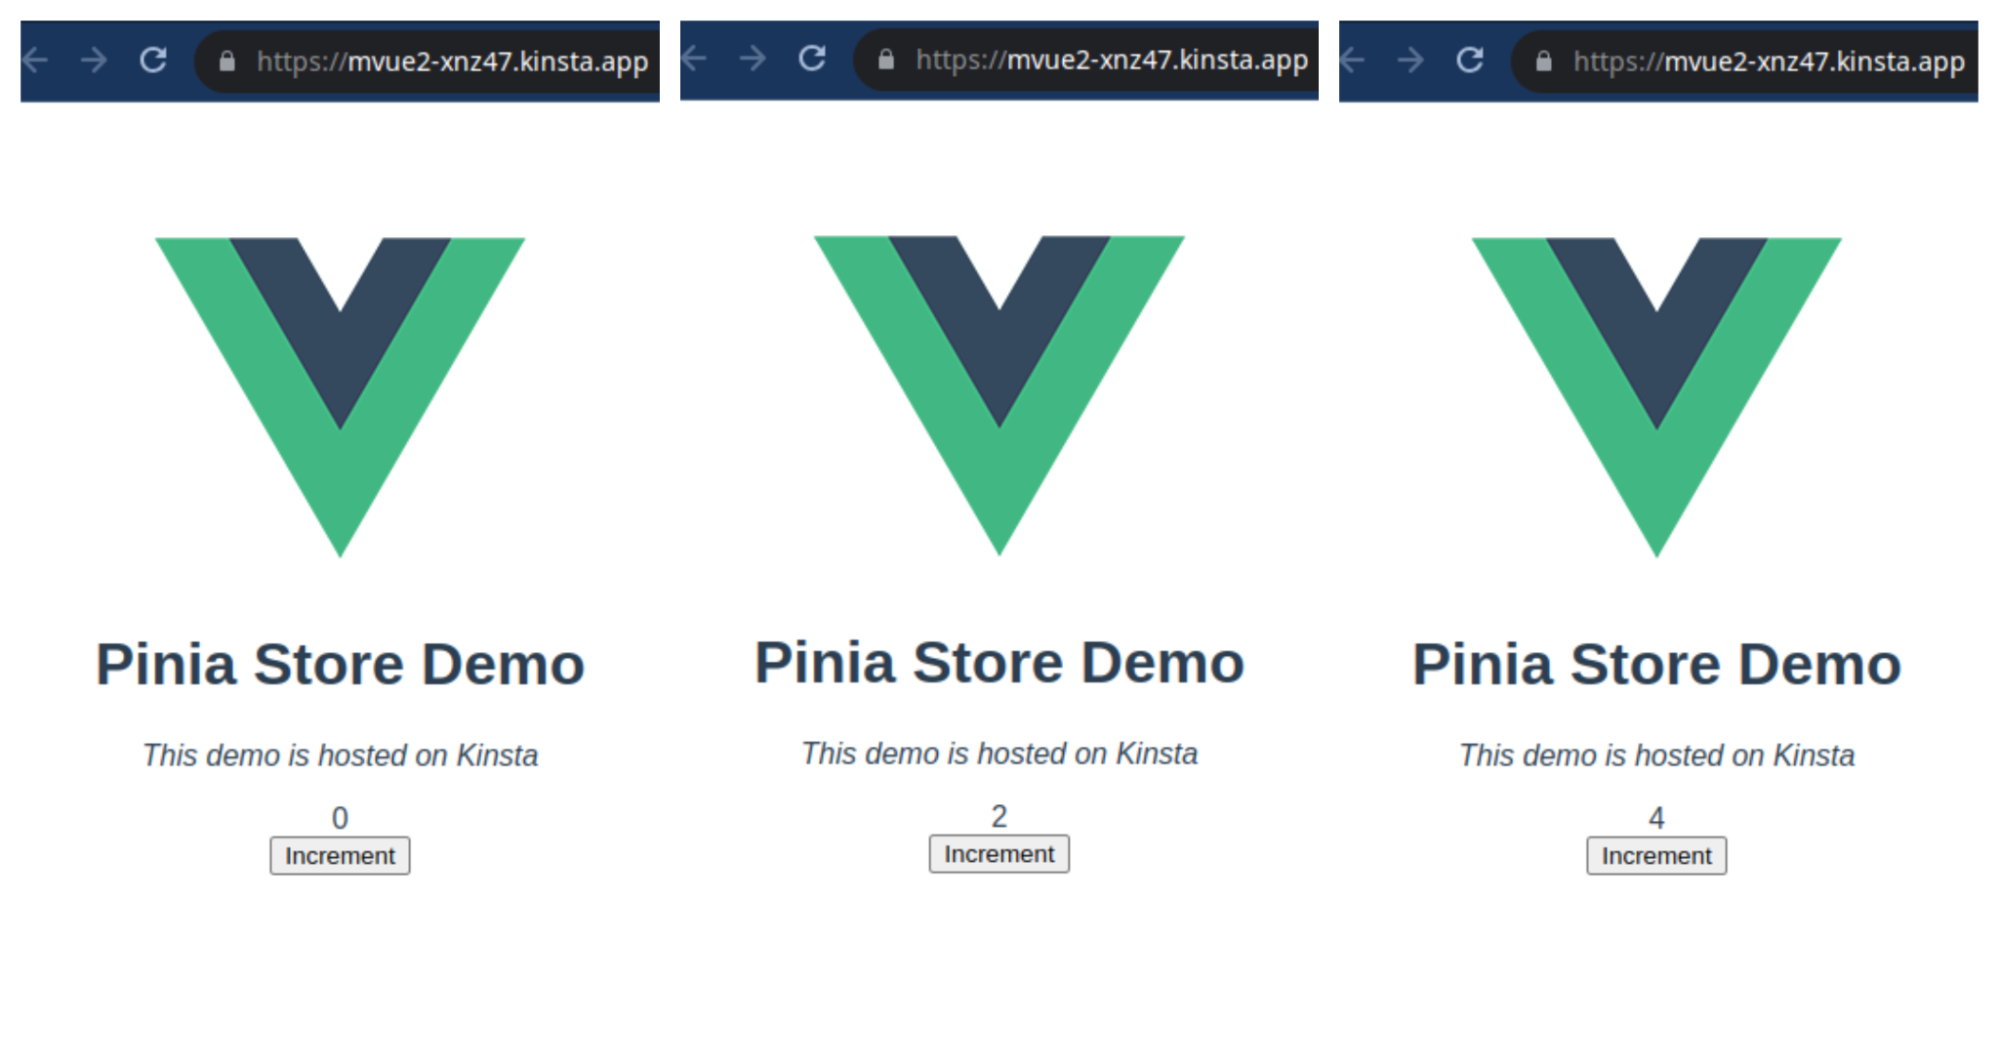 Captura de pantalla de la página de aterrizaje de la Demo del Store de Pinia en diferentes incrementos: 0, 2 y 4.